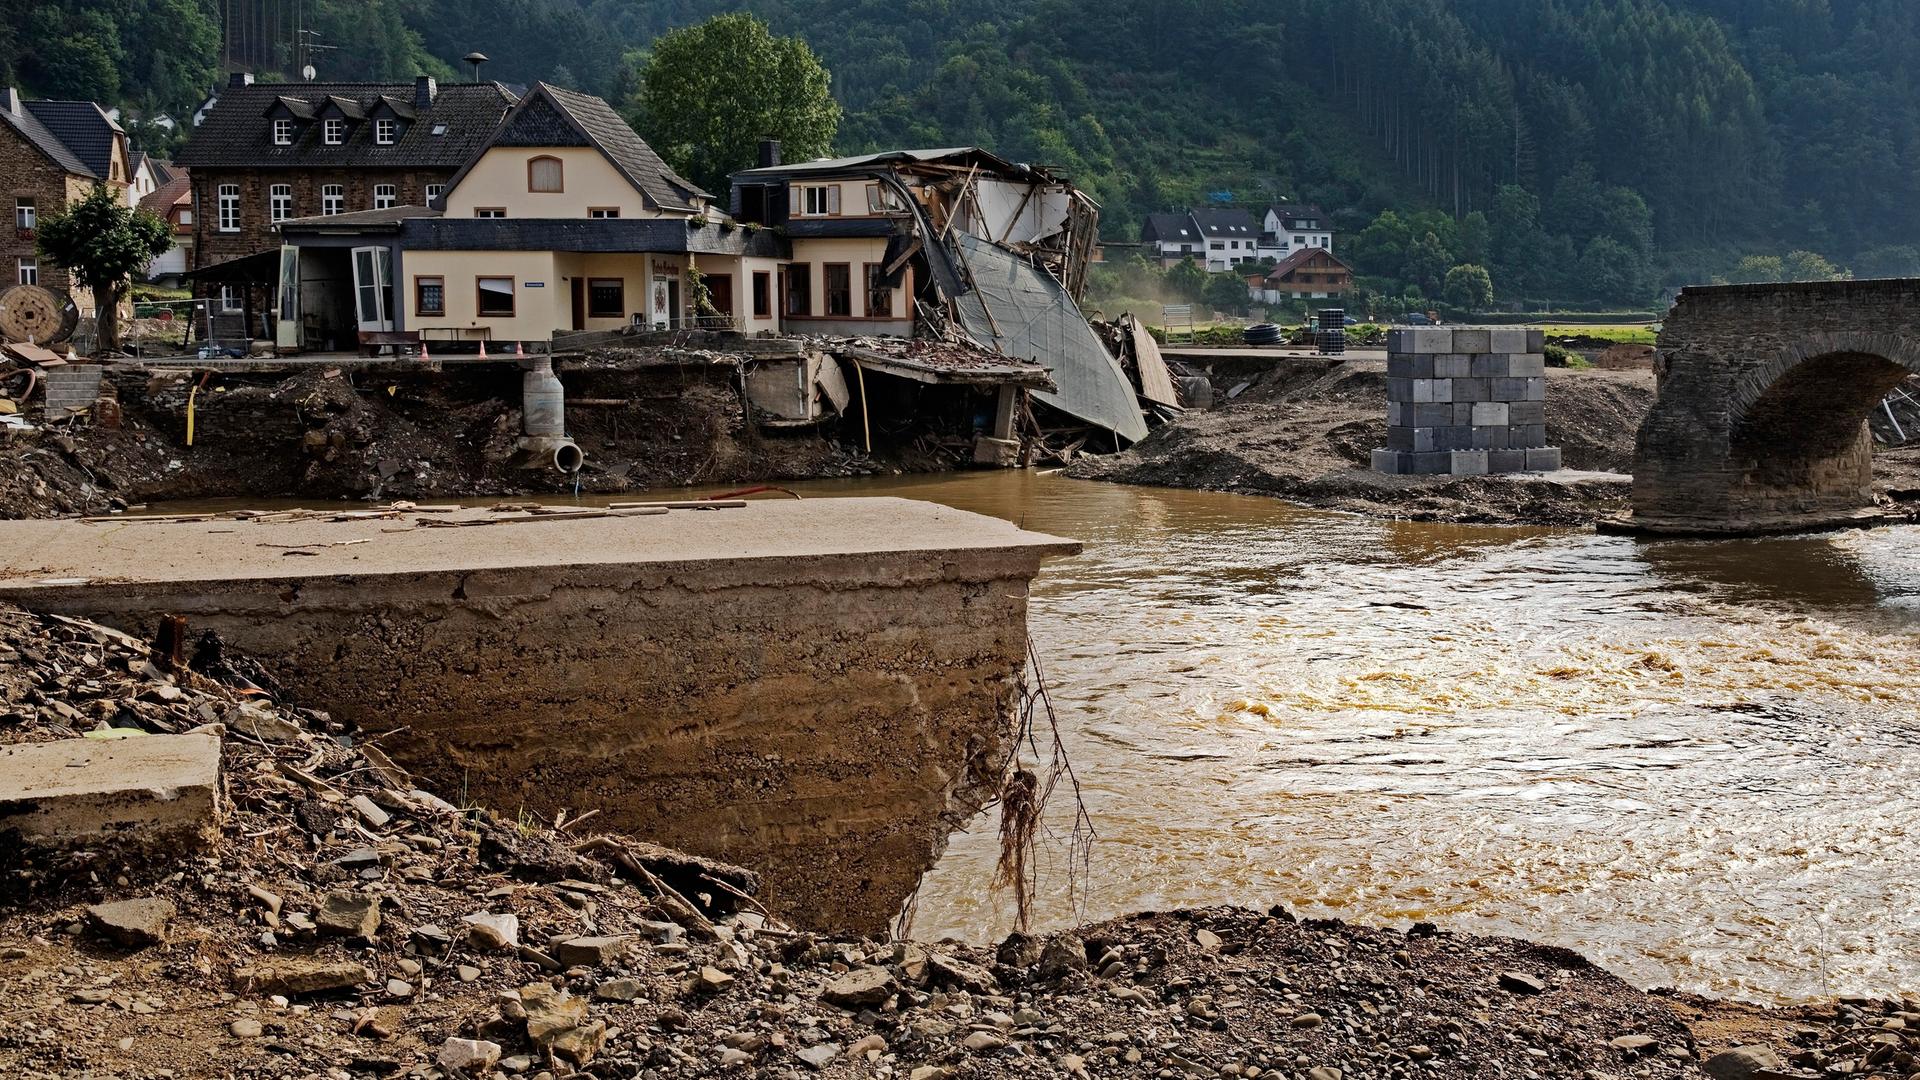 Blick auf die zerstörte Nepomuk-Brücke über den Fluss Ahr im Ahrtal in Rheinland-Pfalz.